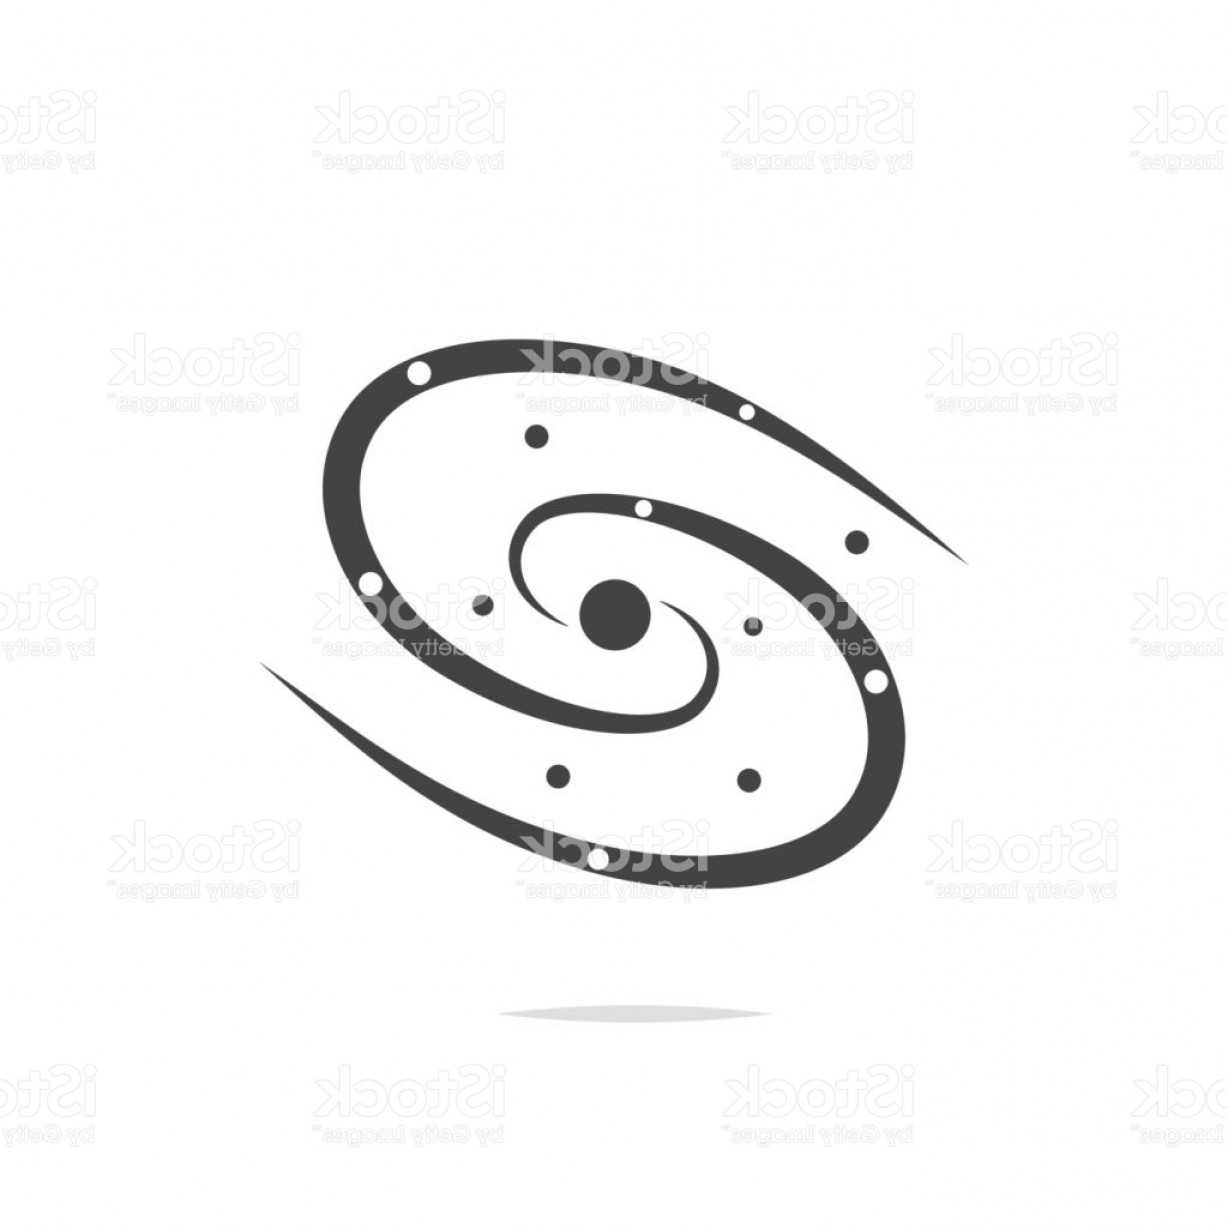 Символ Галактики Млечный путь